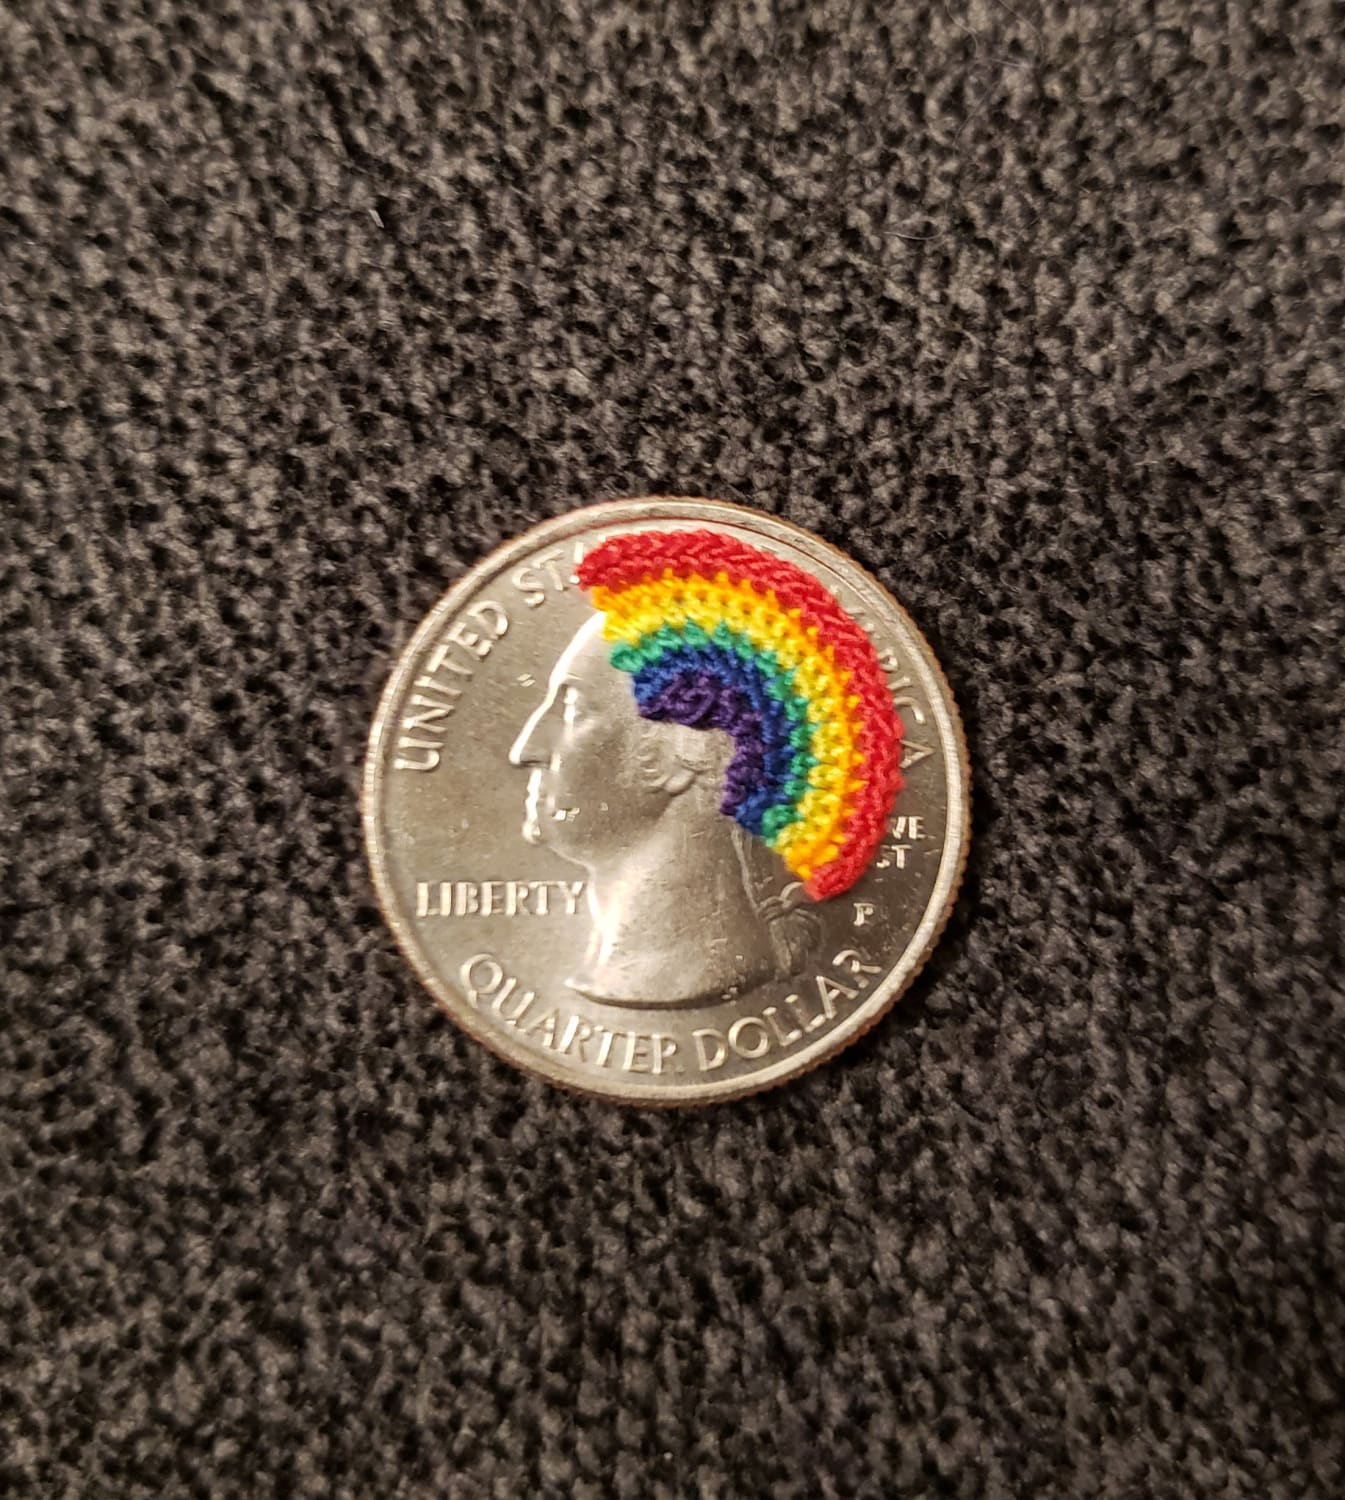 Tiny micro-crochet rainbow.